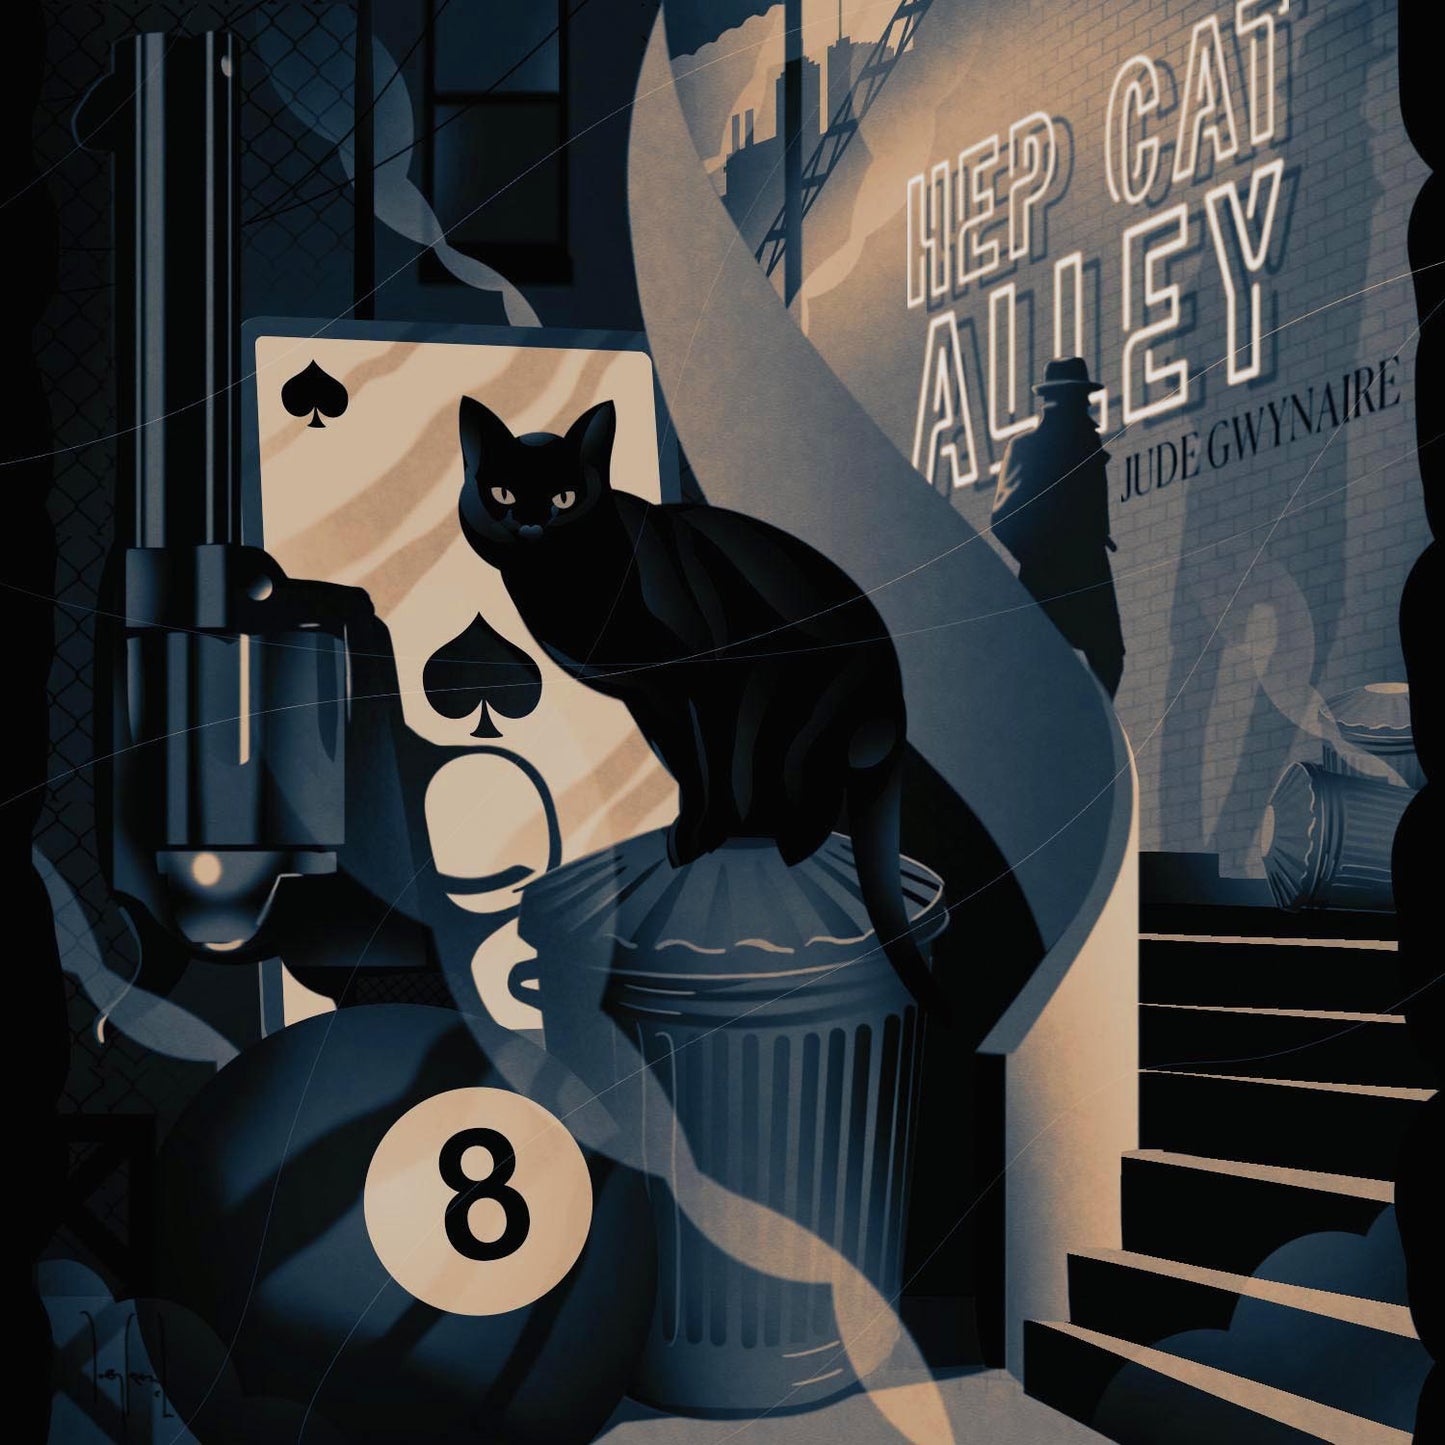 Hep Cat Alley